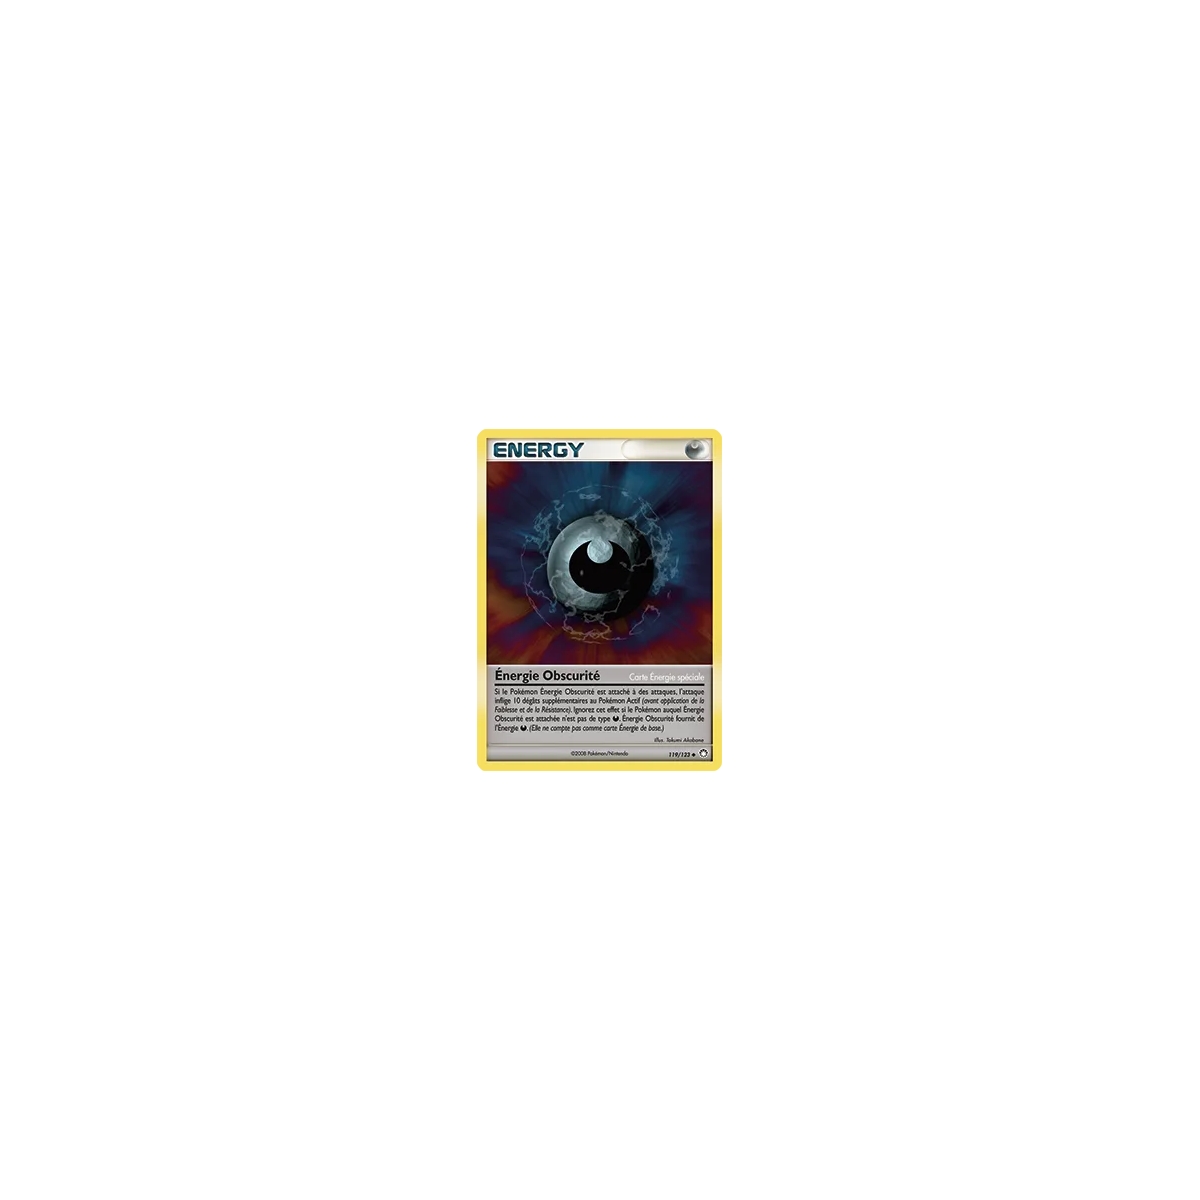 Carte Énergie Obscurité - Peu commune (Brillante) de Pokémon Diamant & Perle Trésors Mystérieux 119/123